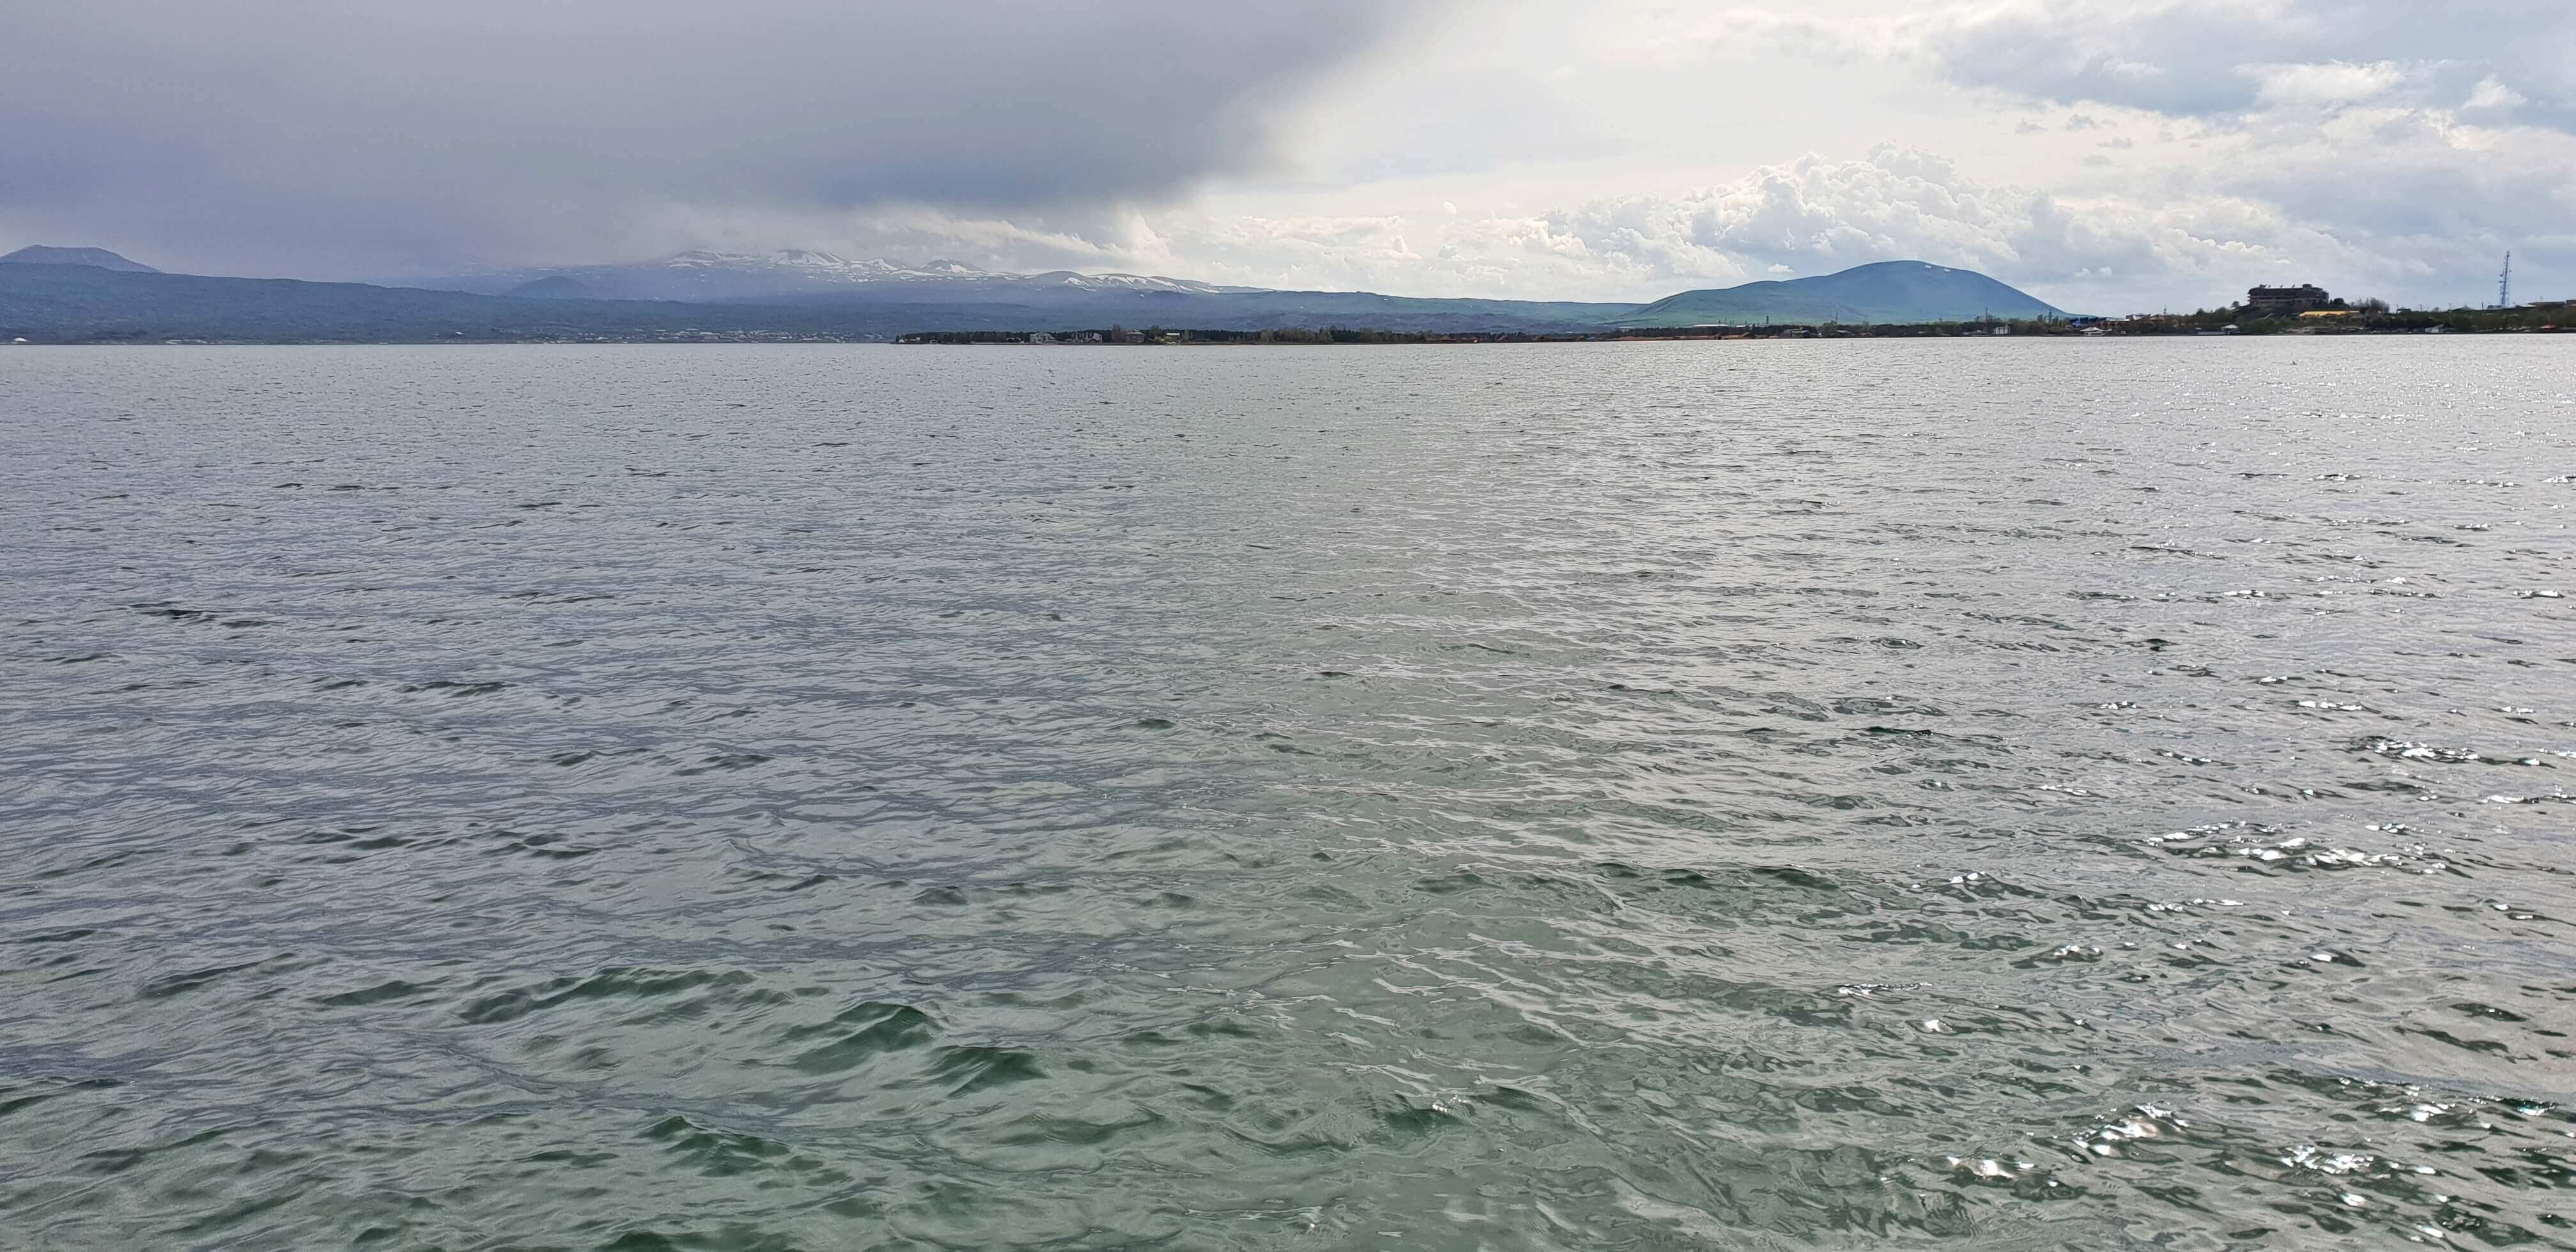 Lake Sevan is the largest freshwater lake in Eurasia